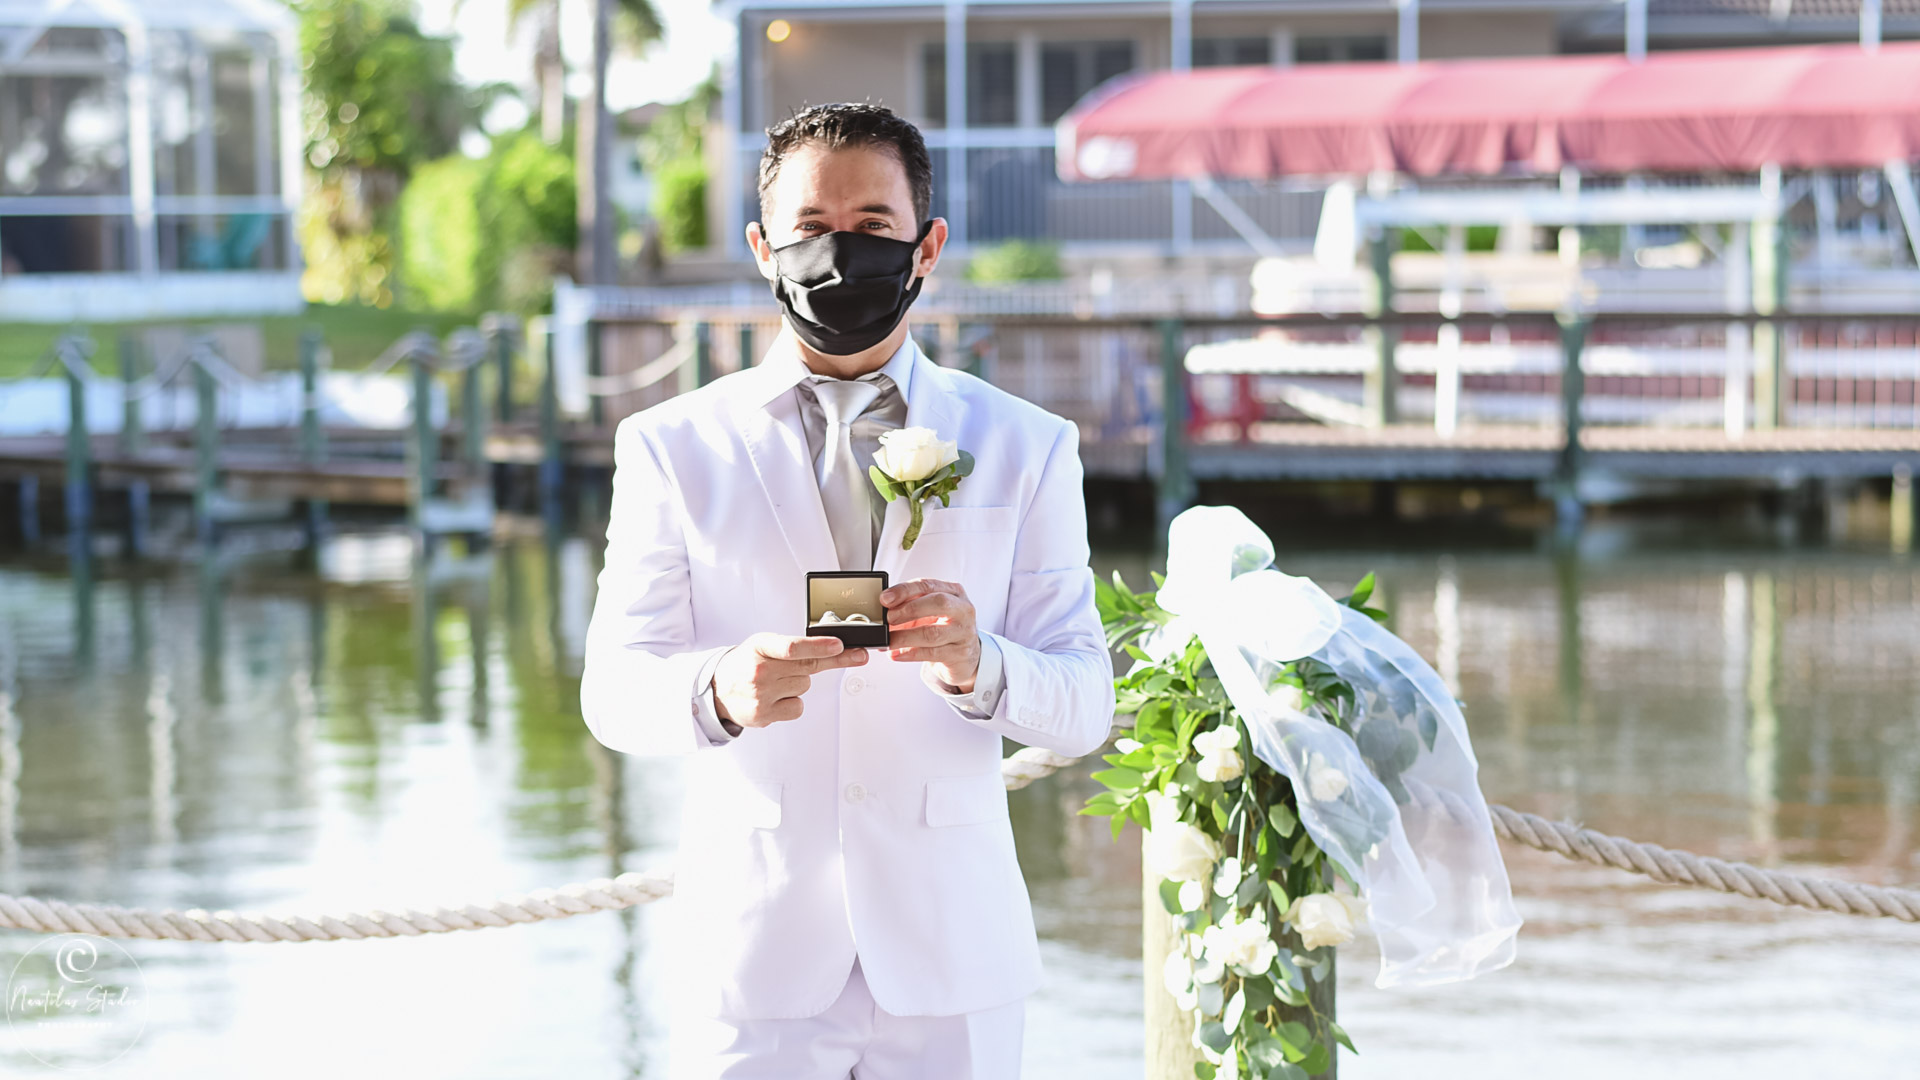 Foto von Hochzeit während COVID 19 zeigt Bräutigam mit Maske und Eheringe